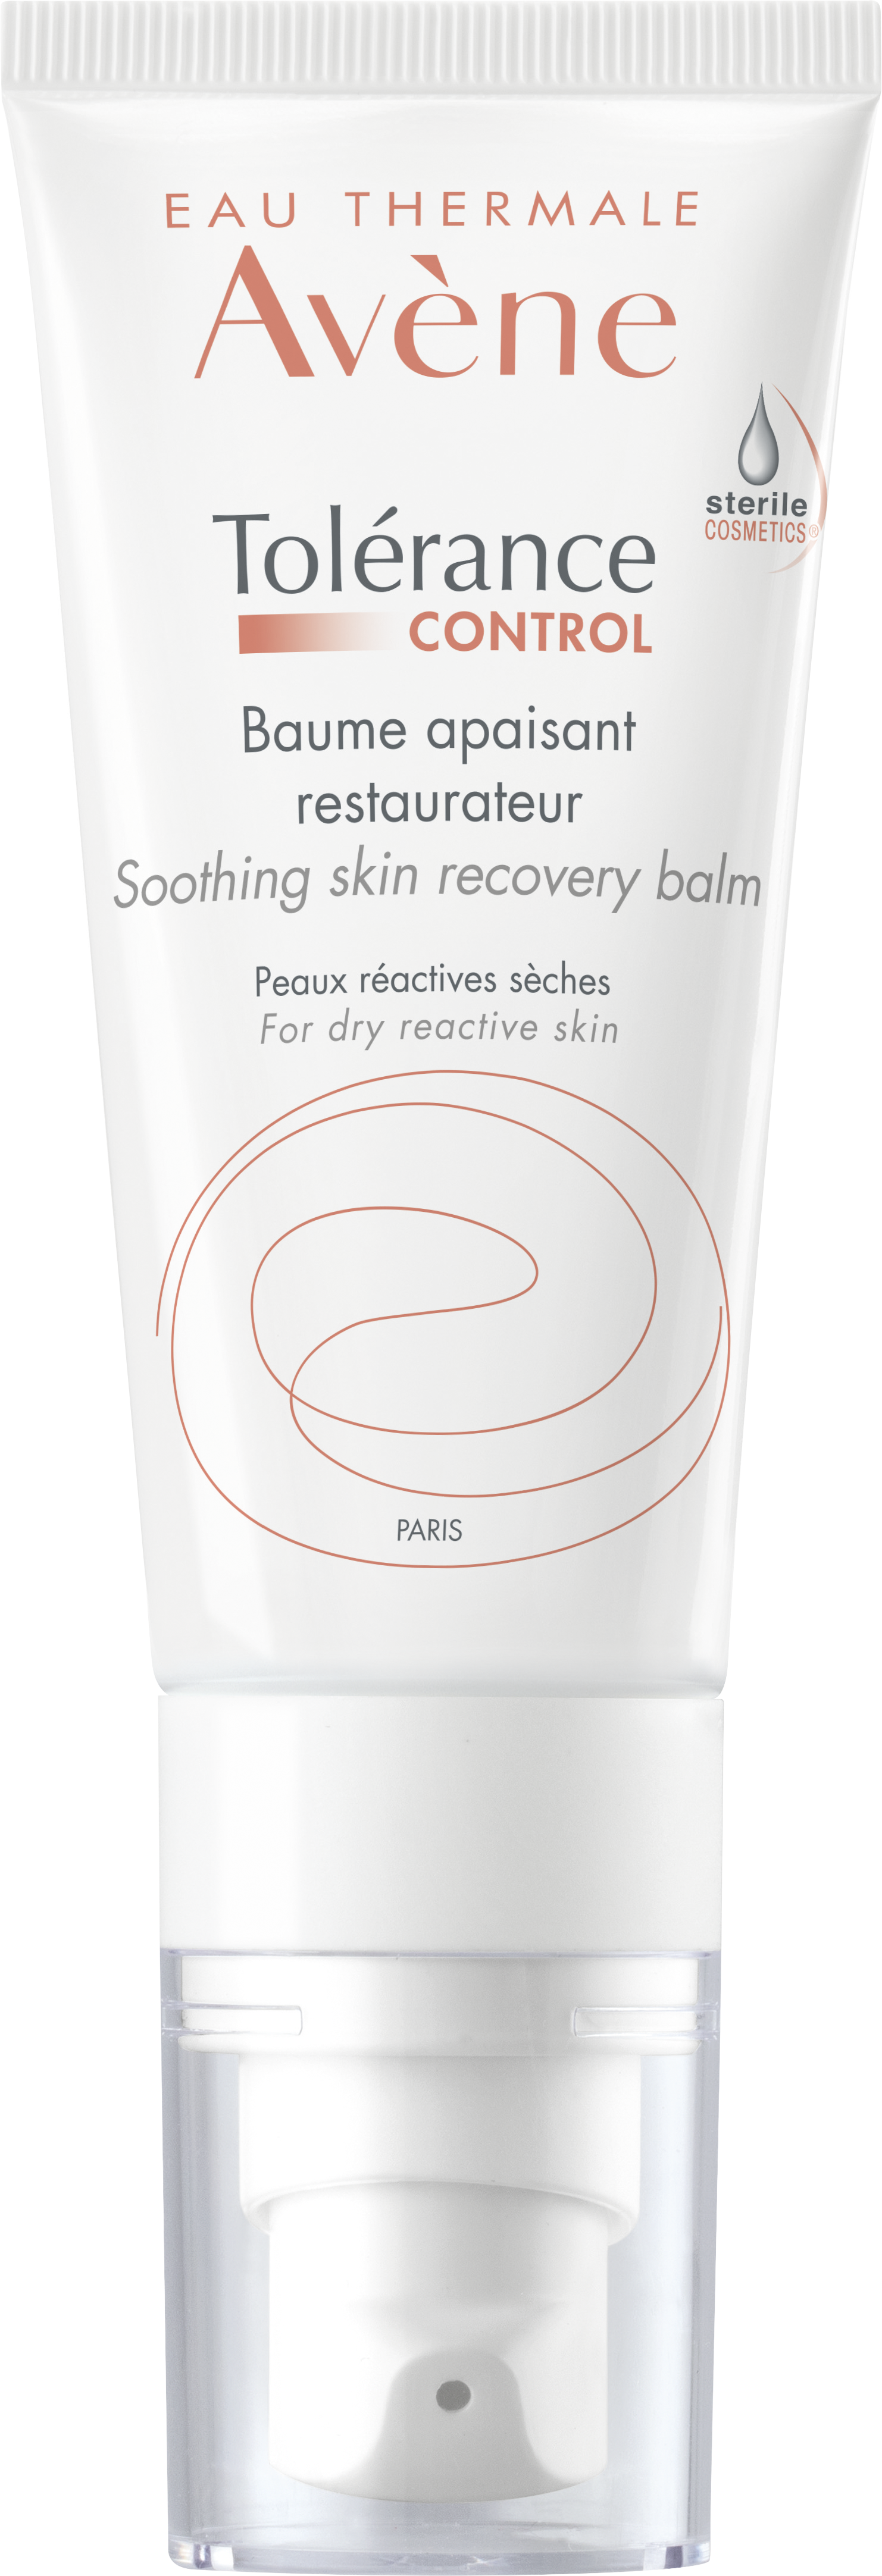 ტოლერანს კონტროლი კანის დამამშვიდებელი აღმდგენი ბალზამი - ავენი / Tolerance Control -Soothing skin recovery balm - Avene